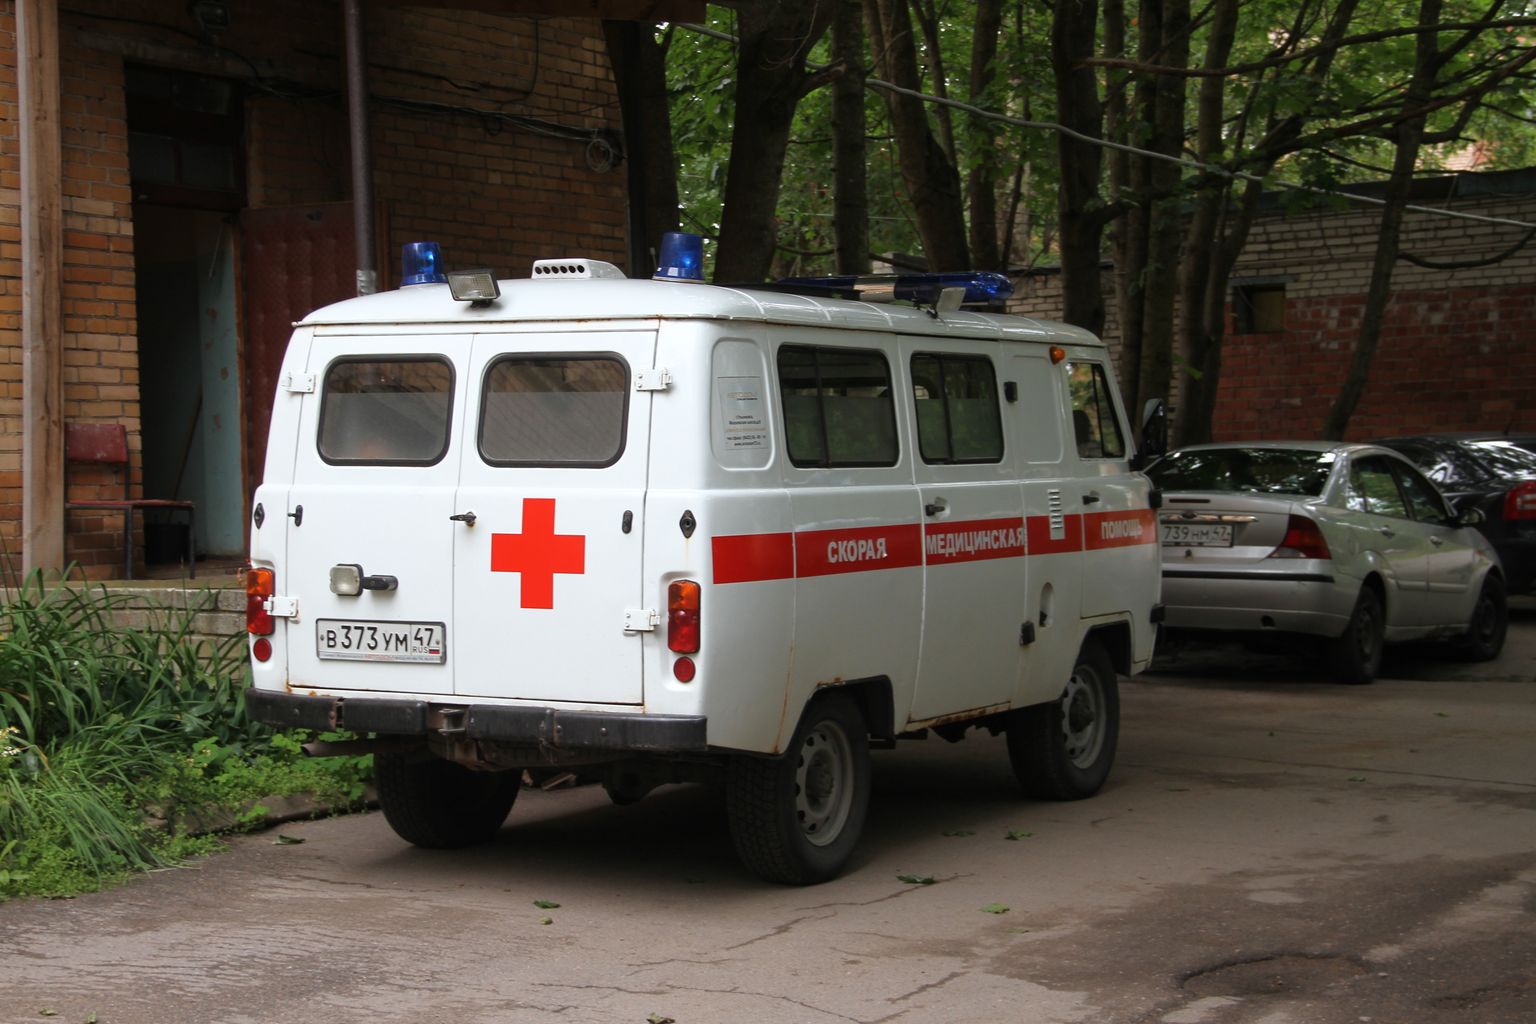 Скорая помощь во дворе больницы в Ивангороде. Иллюстративное фото.